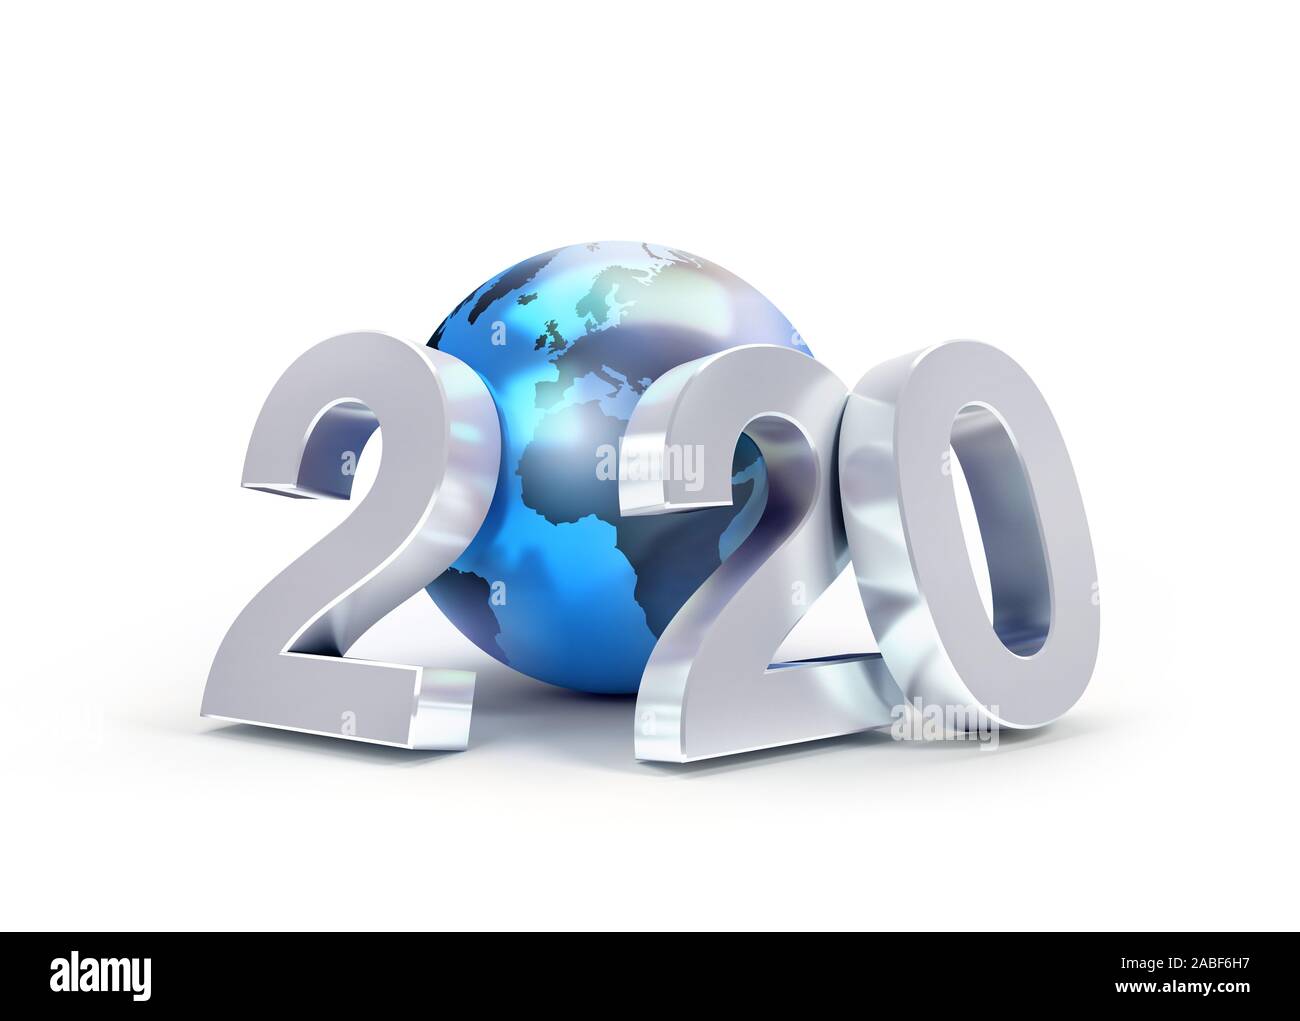 2020 Nouvelle année date nombre composé avec un bleu de la planète terre, l'accent sur l'Europe et l'Afrique, isolé sur blanc - 3D illustration Banque D'Images